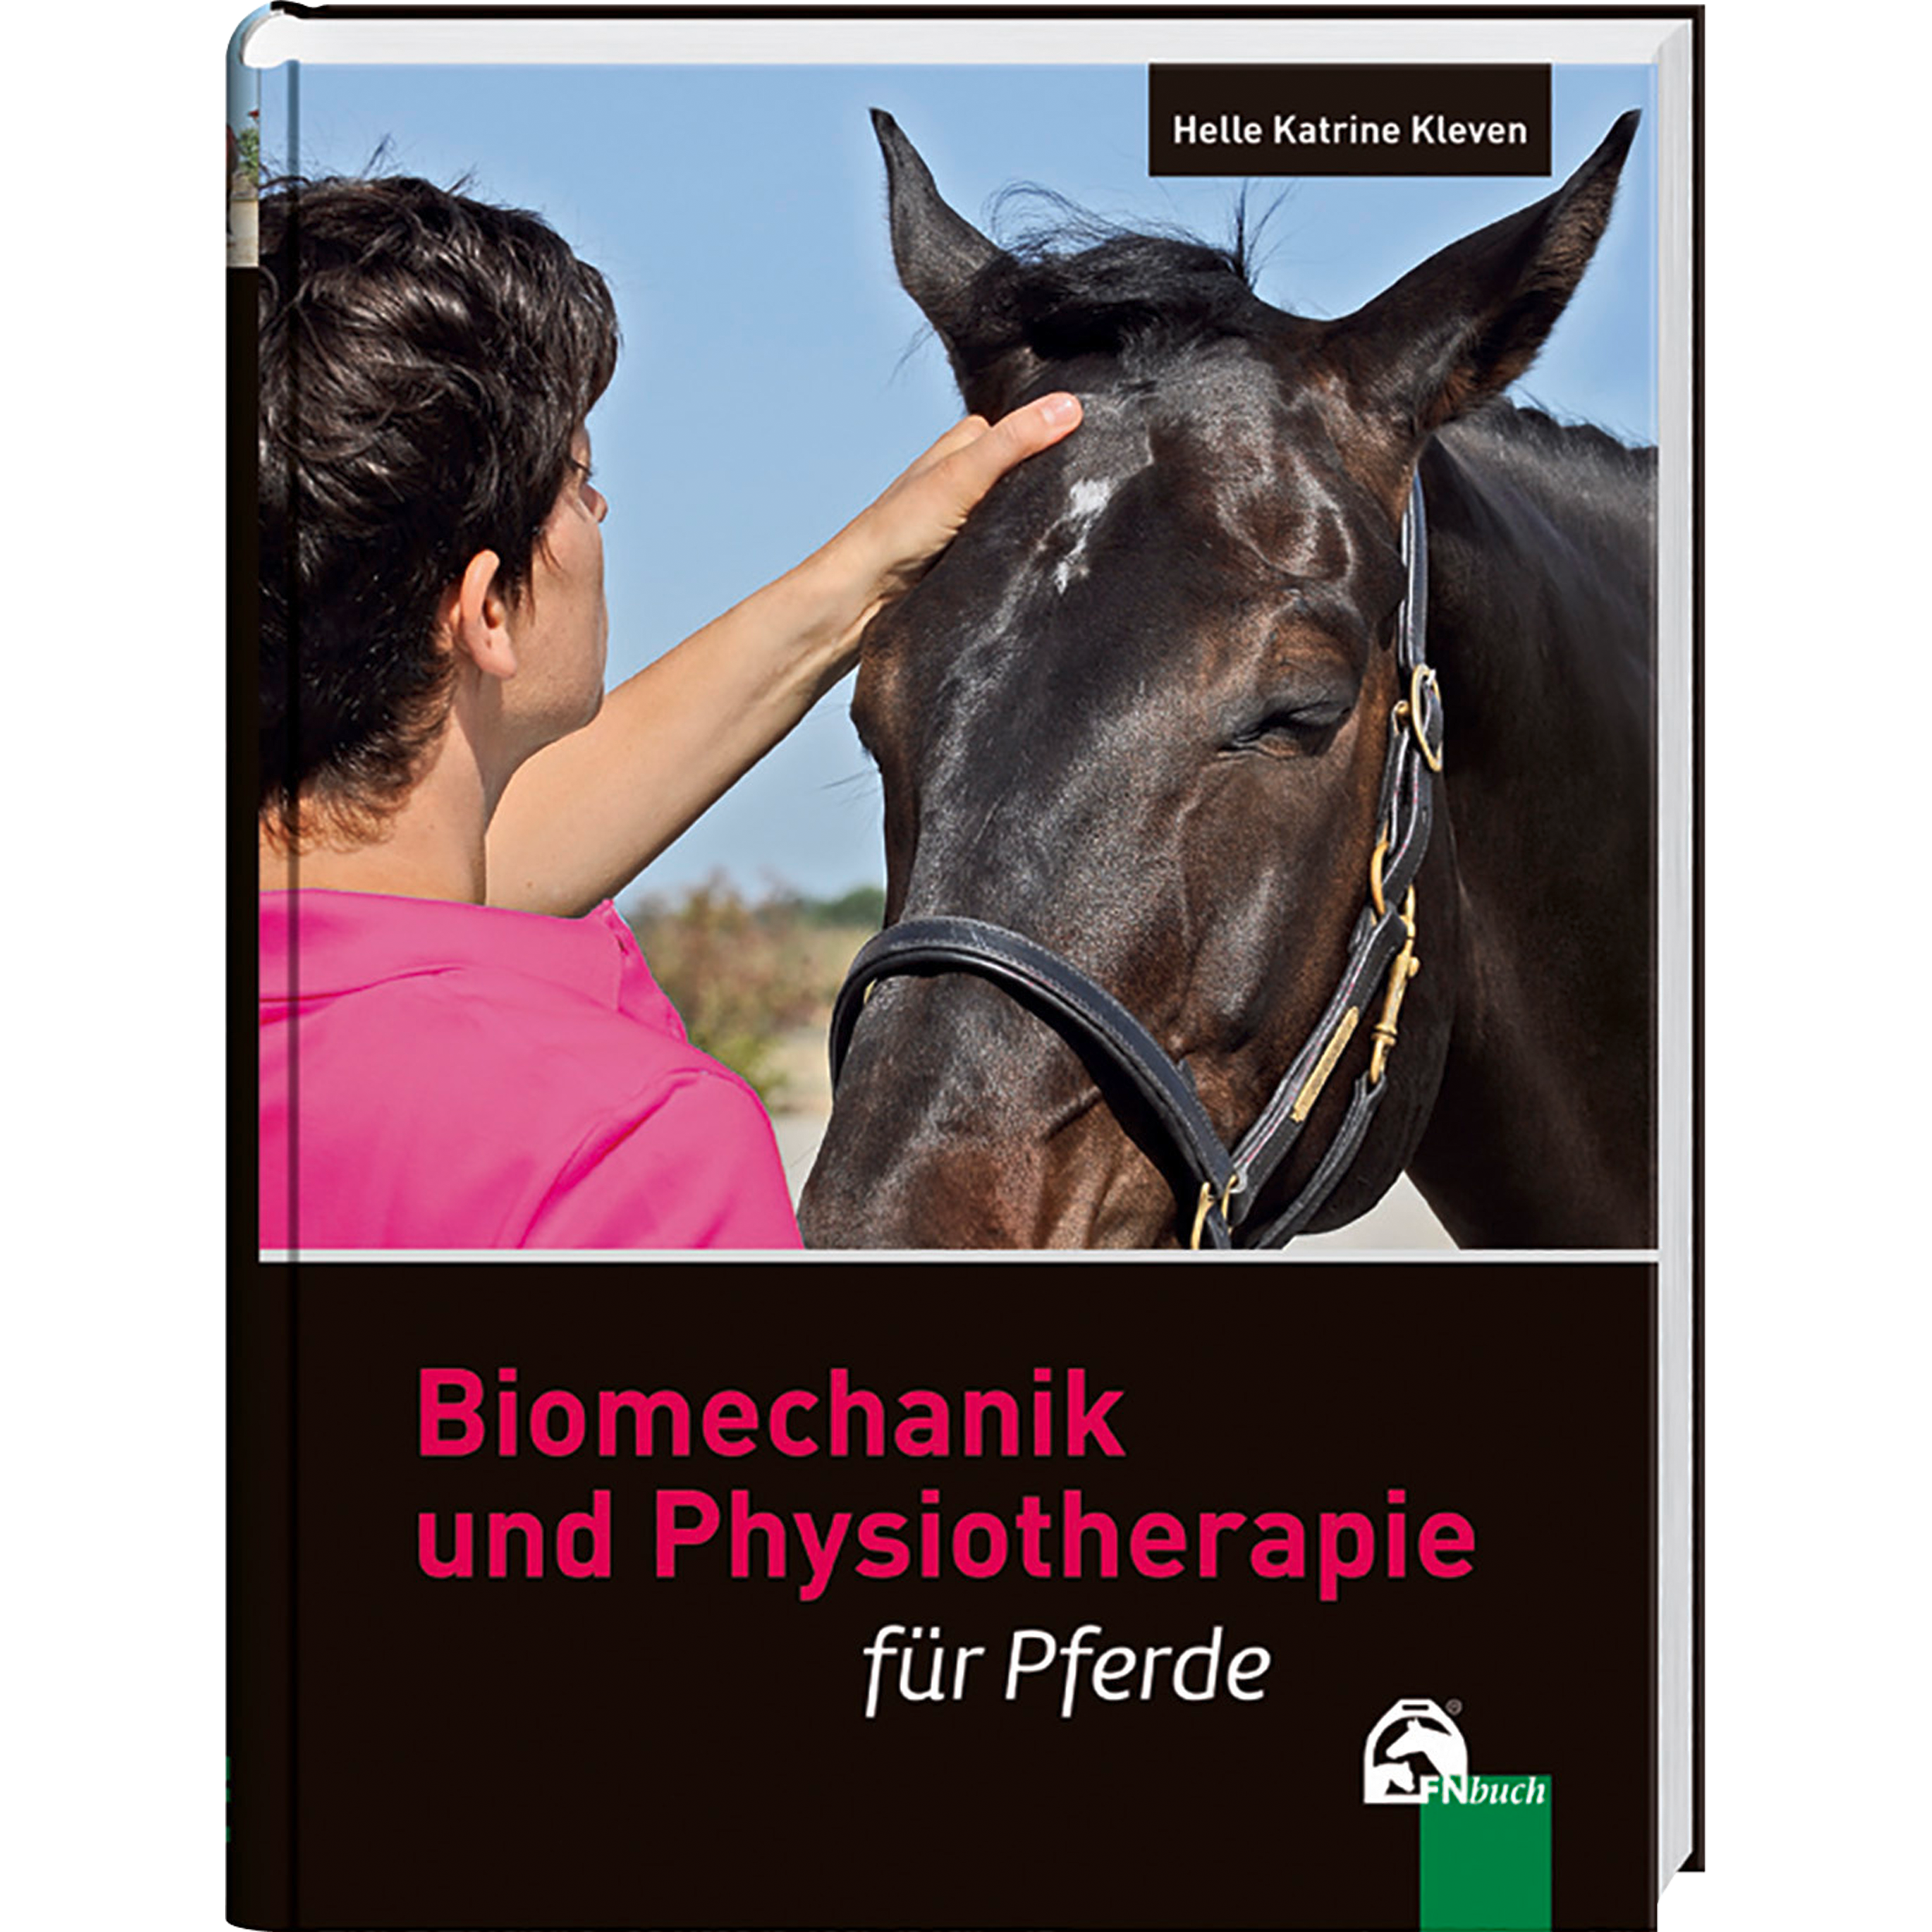 FN-Verlag Lehrbuch “Biomechanik und Physiotherapie für Pferde”